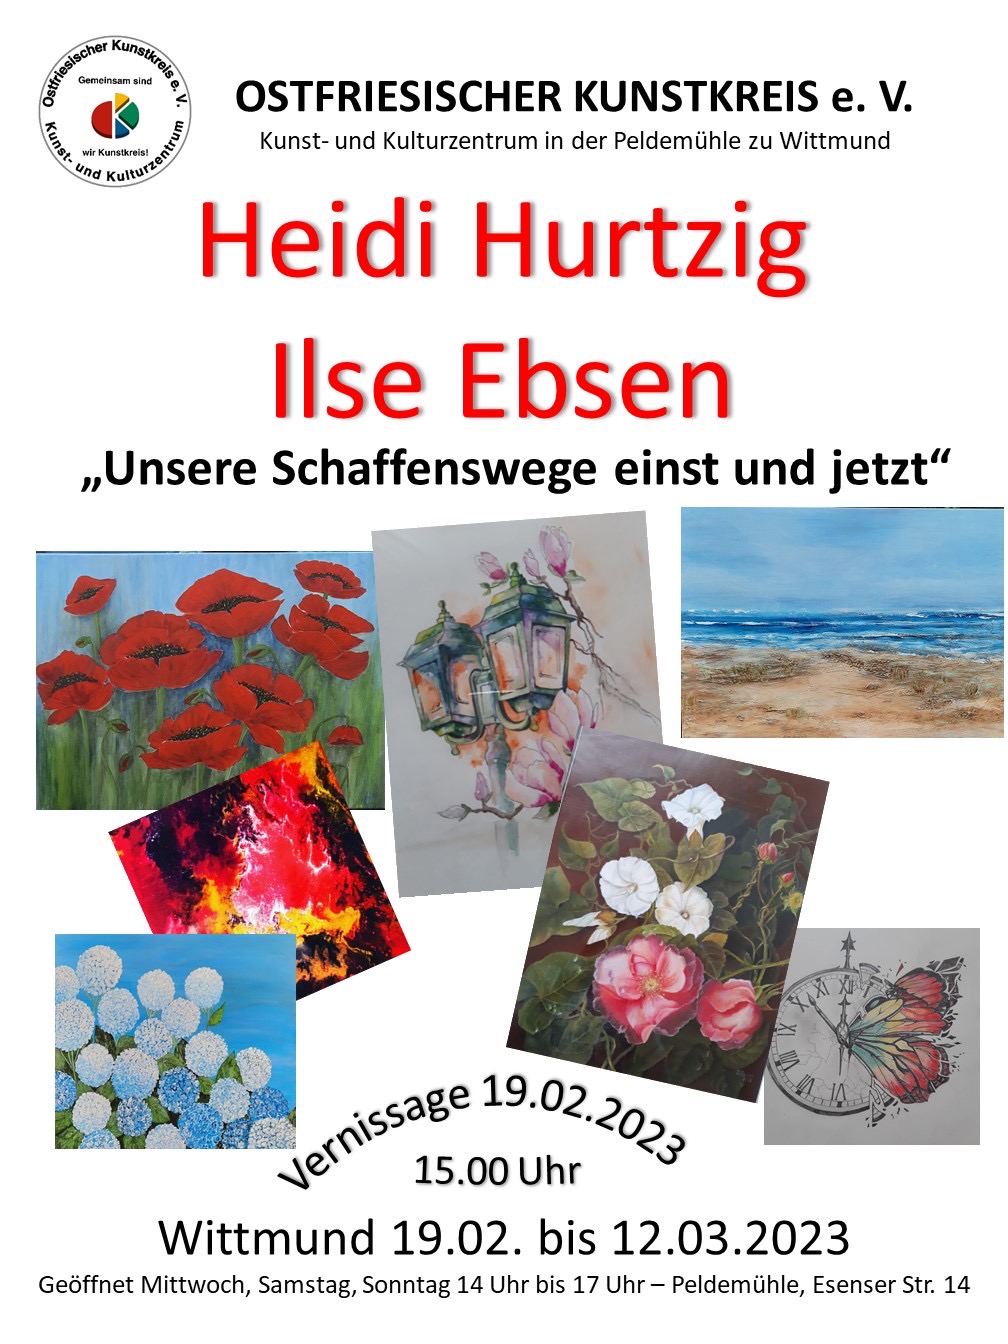 Ausstellungseröffnung Heidi Hurtzig und Ilse Ebsen 19.2.2023, 15 Uhr